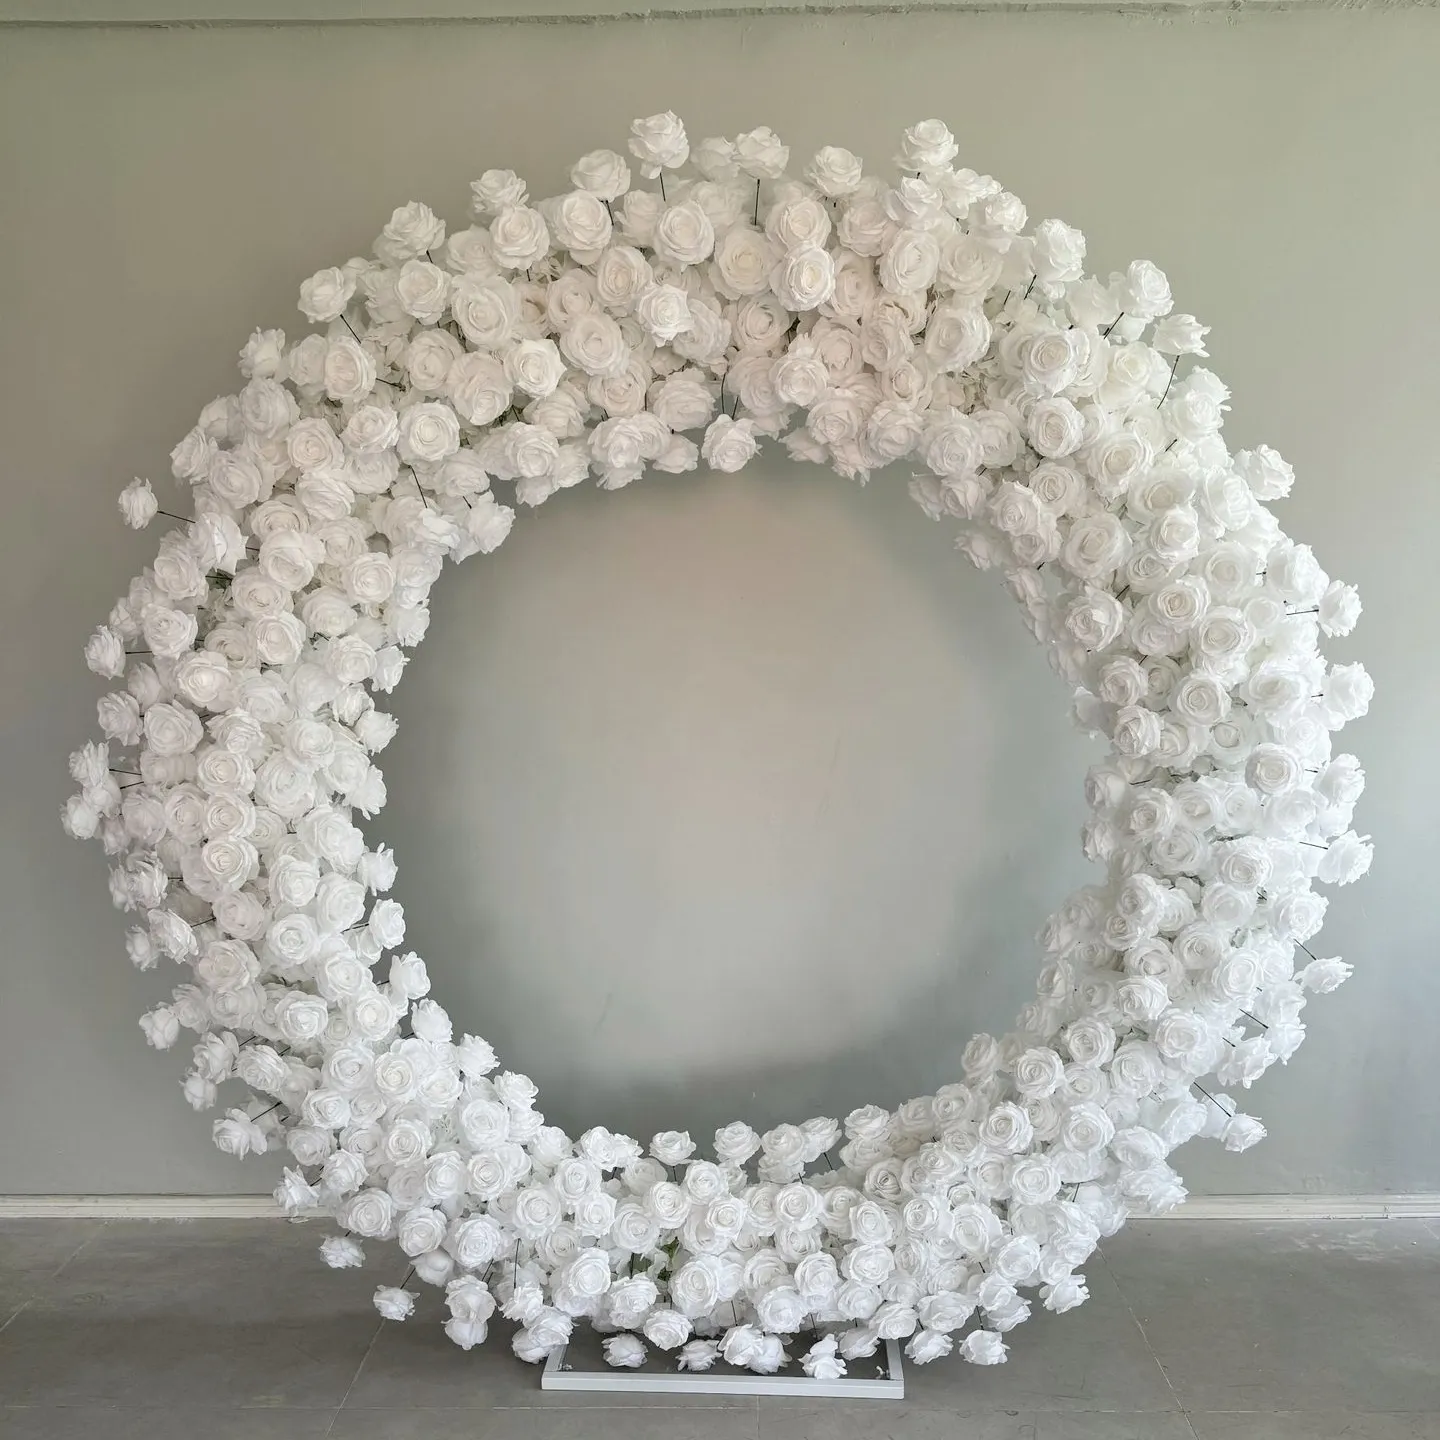 Faux fleurs en soie haute qualité blanc pièce maîtresse Arche toile de fond fleurs artificielles décorations d'arc pour événements fournitures de fête